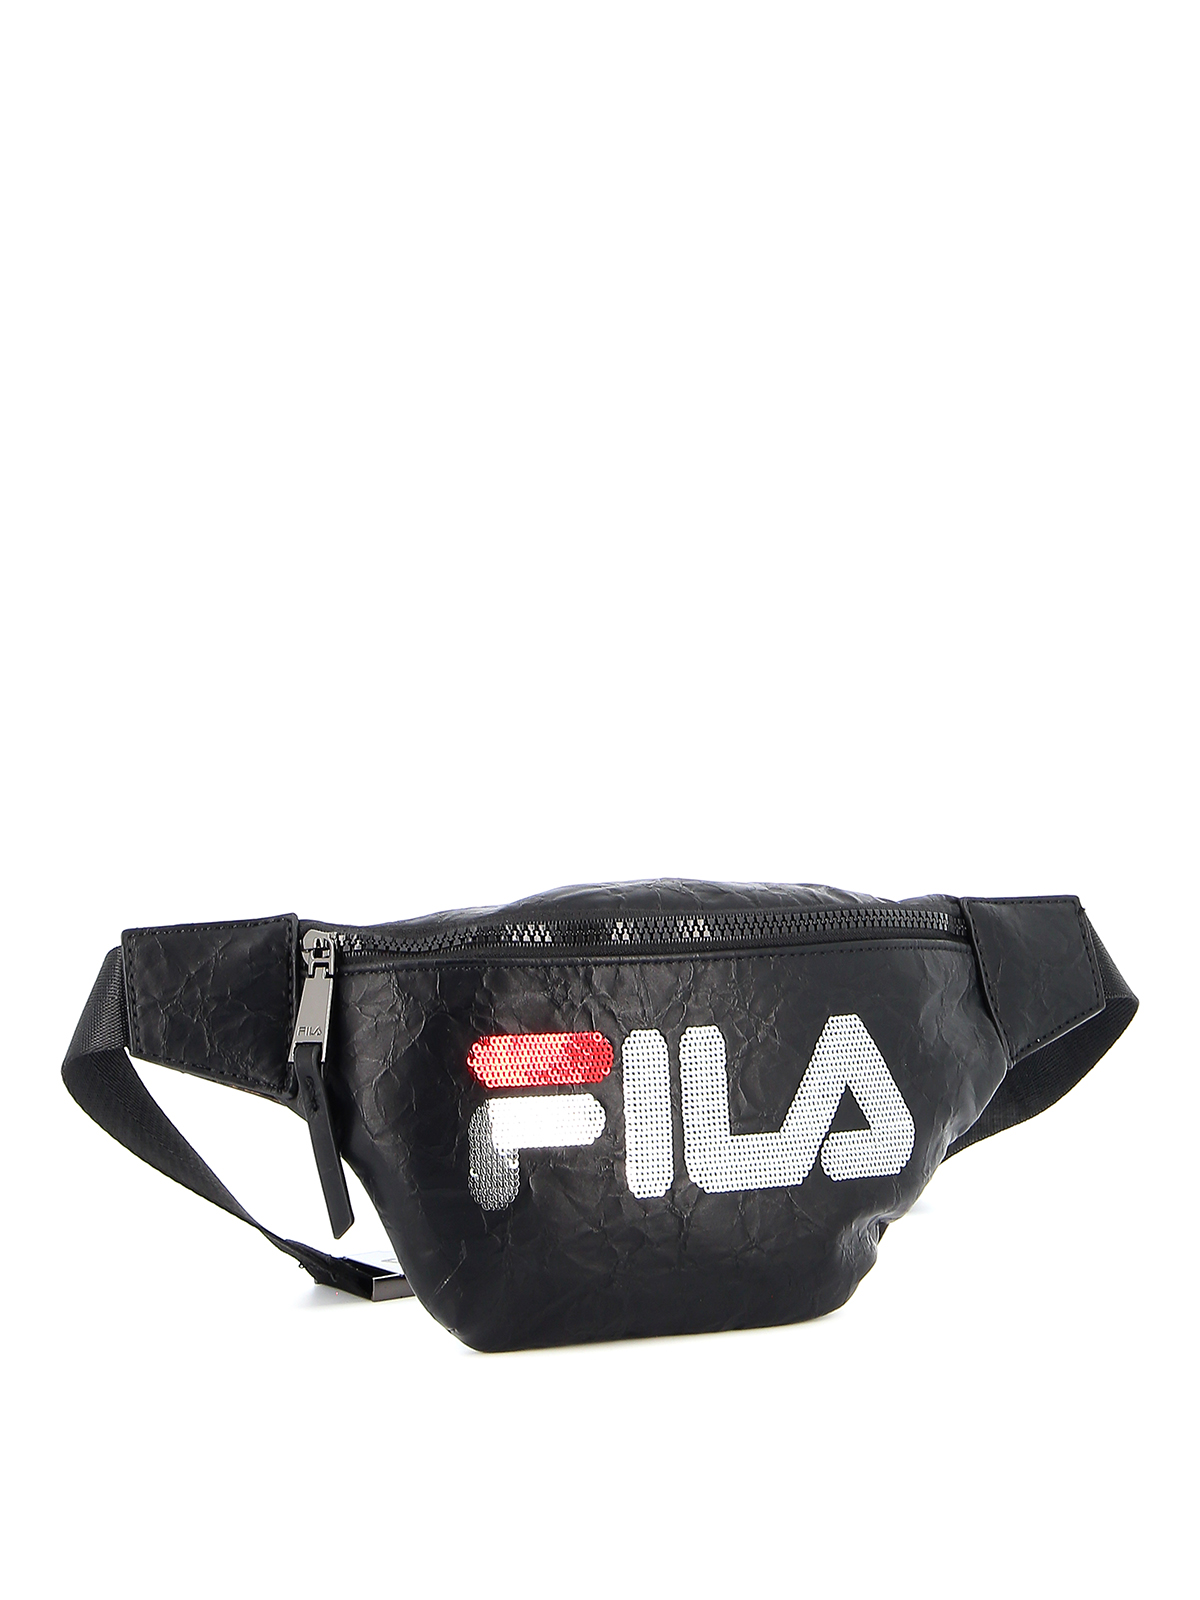 Belt Fila Embellished belt bag - 685200761887002 iKRIX.com